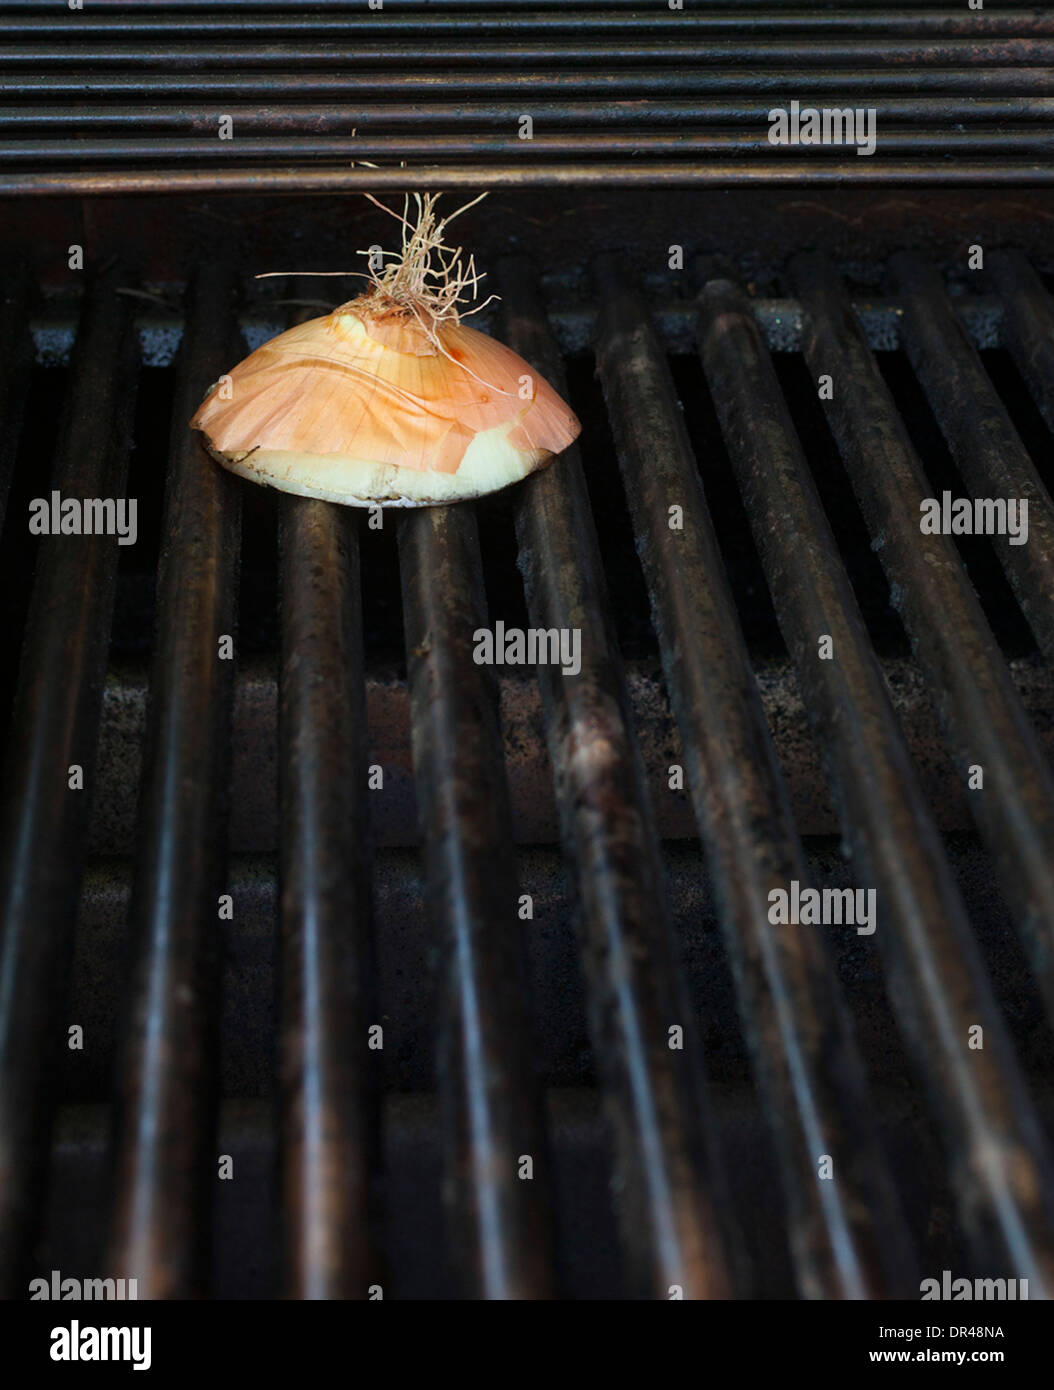 Barbecue à l'oignon grillé Banque D'Images